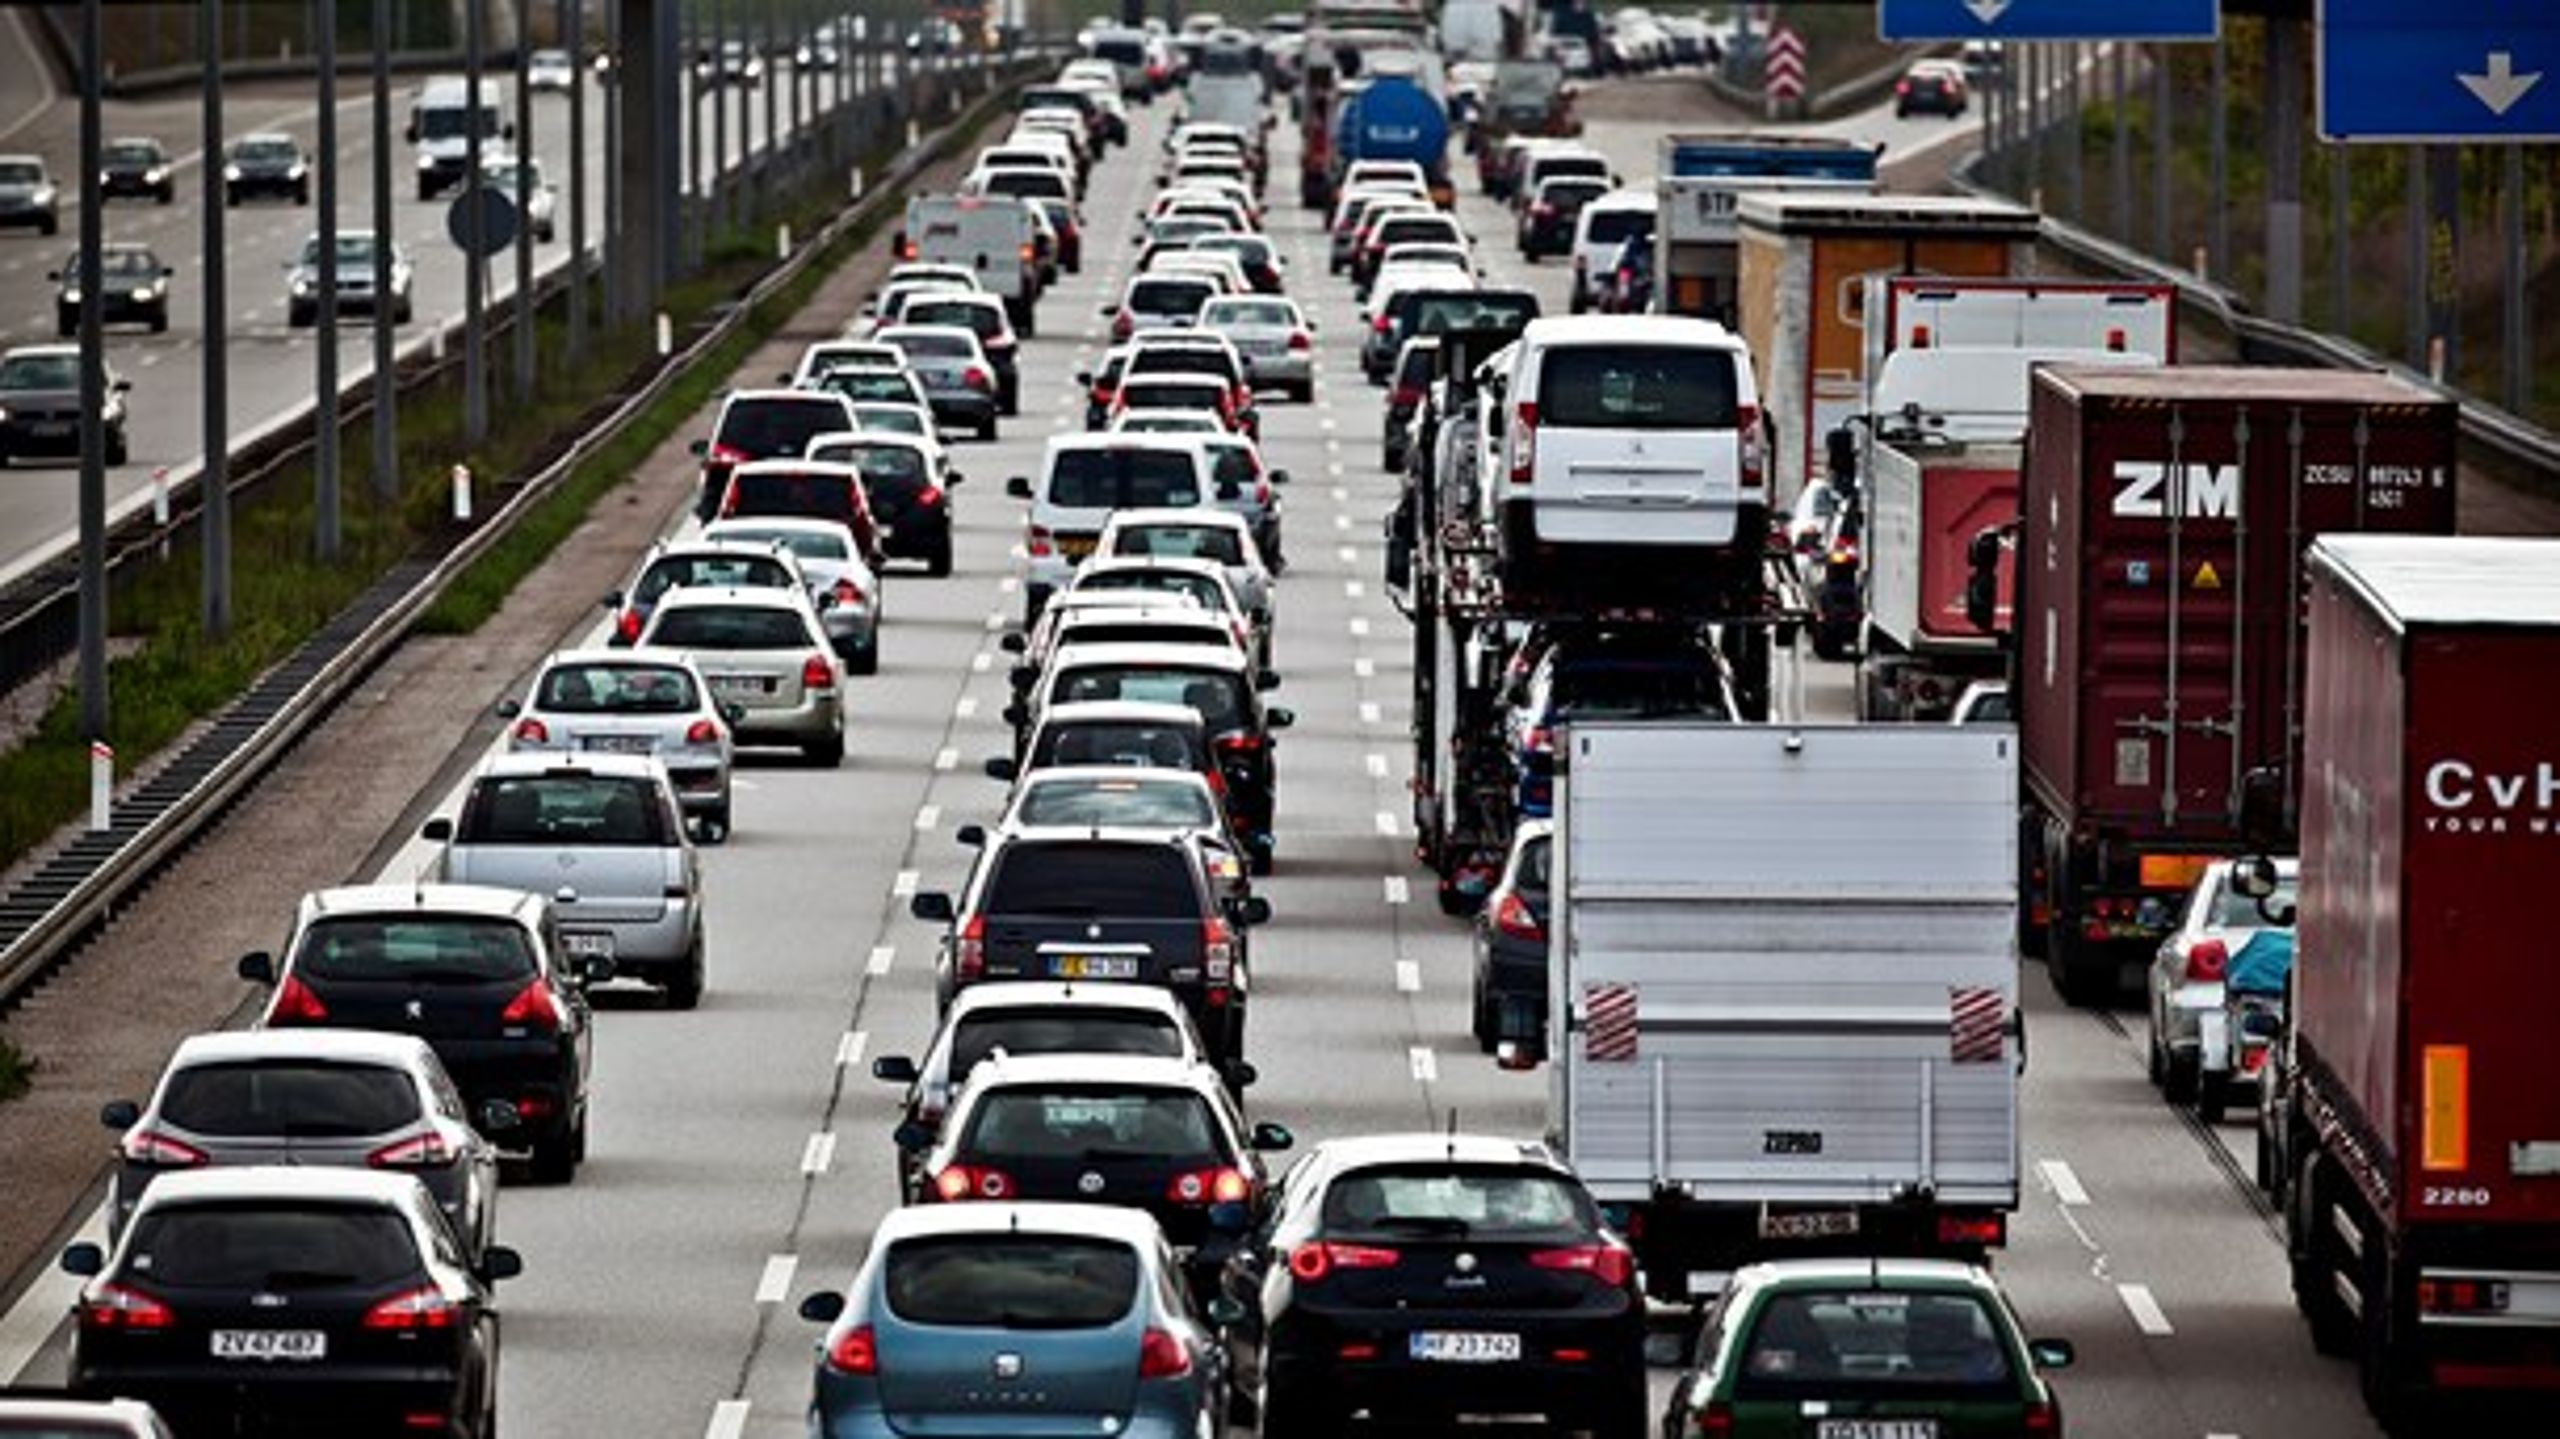 Flere og større motorveje genererer flere biler, og så vender trængselsproblemet blot tilbage, skriver Henning Hyllested, transportordfører for Enhedslisten.